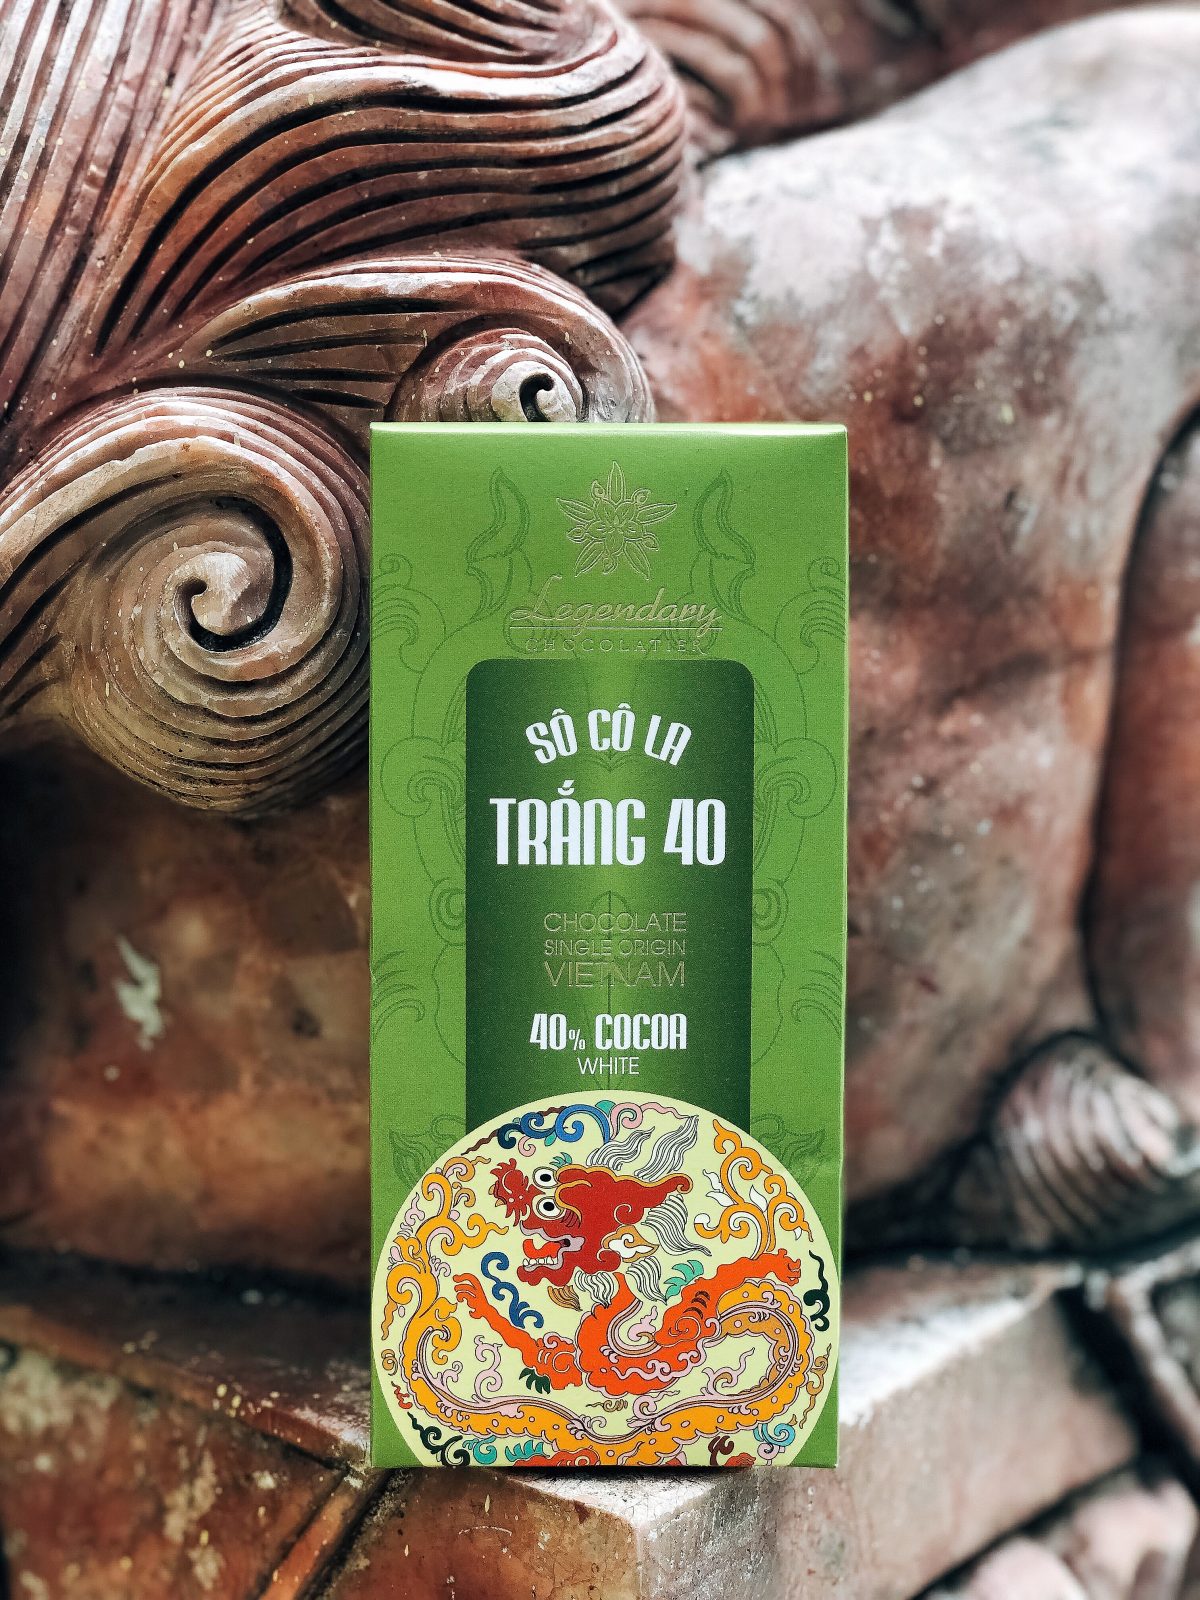 Trắng 40% - Công Ty TNHH Legendary Việt Nam